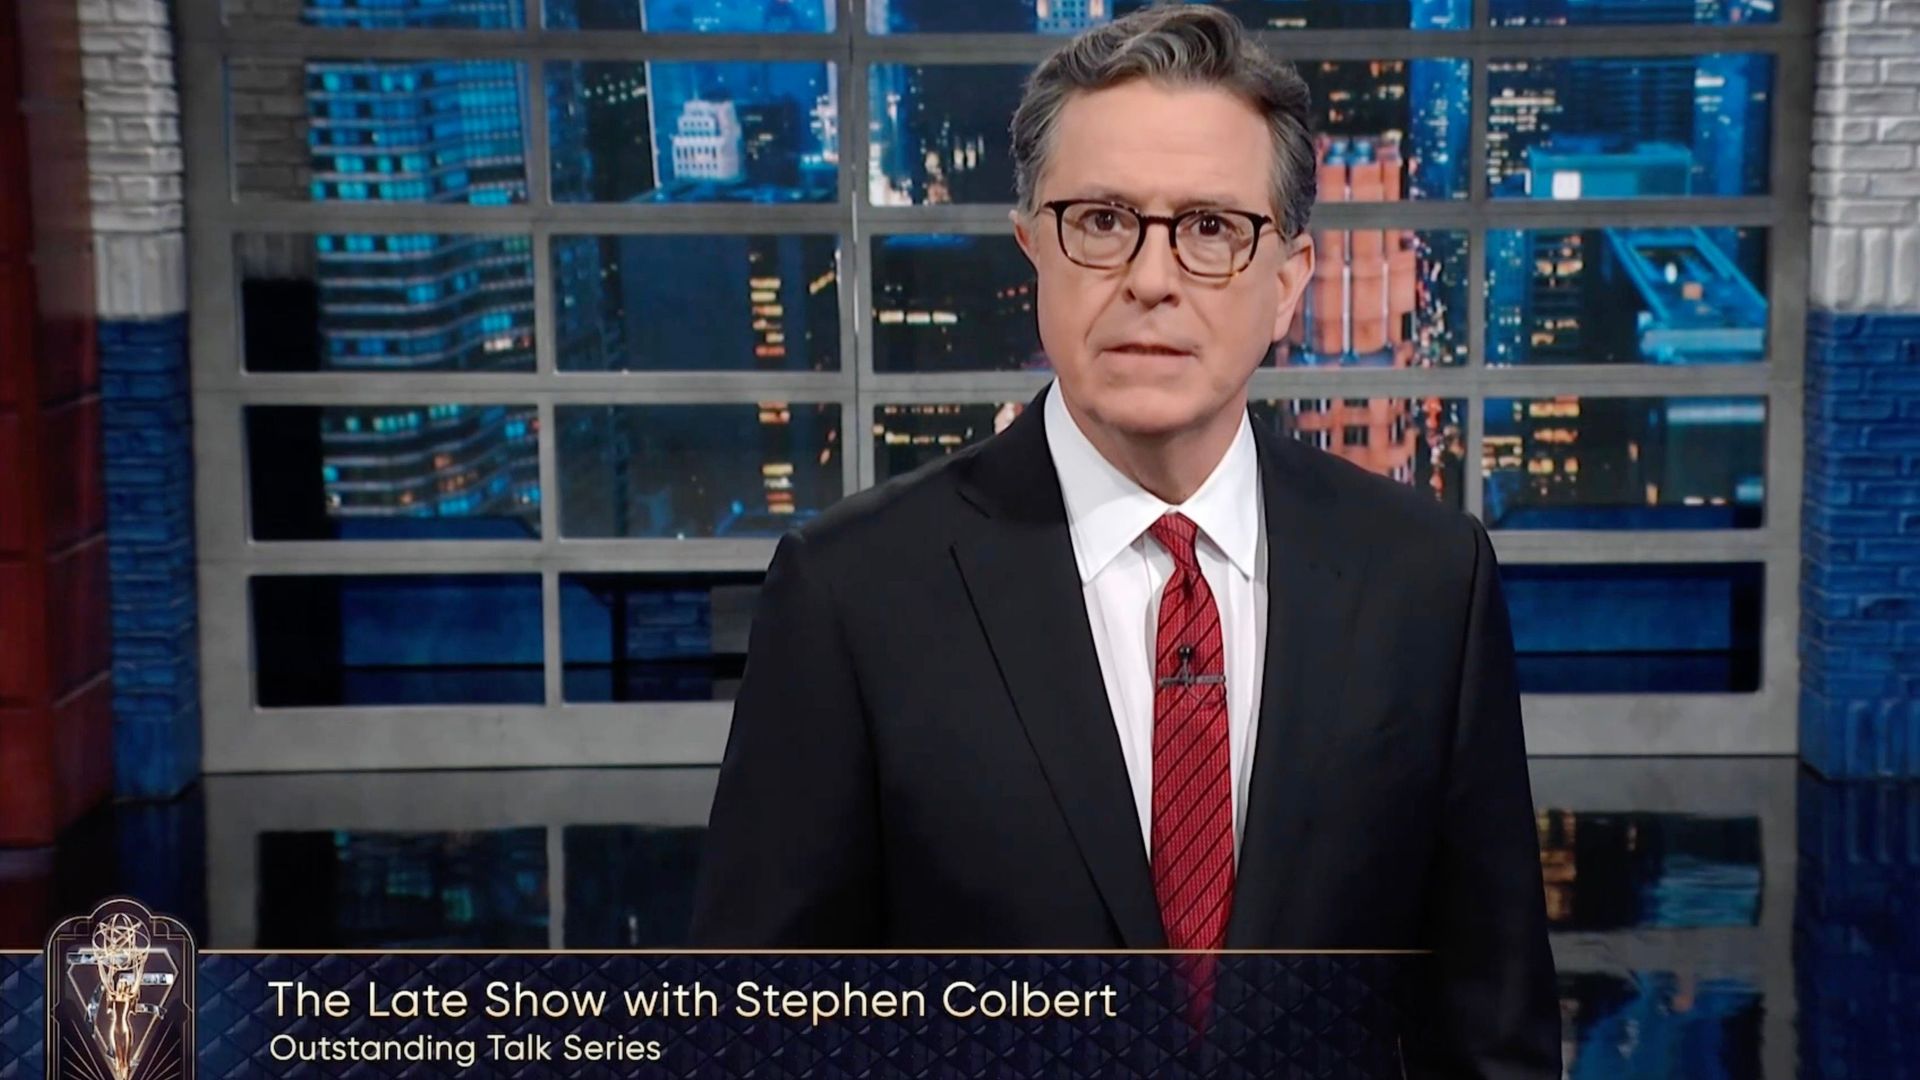 Stephen Colbert took the week off work